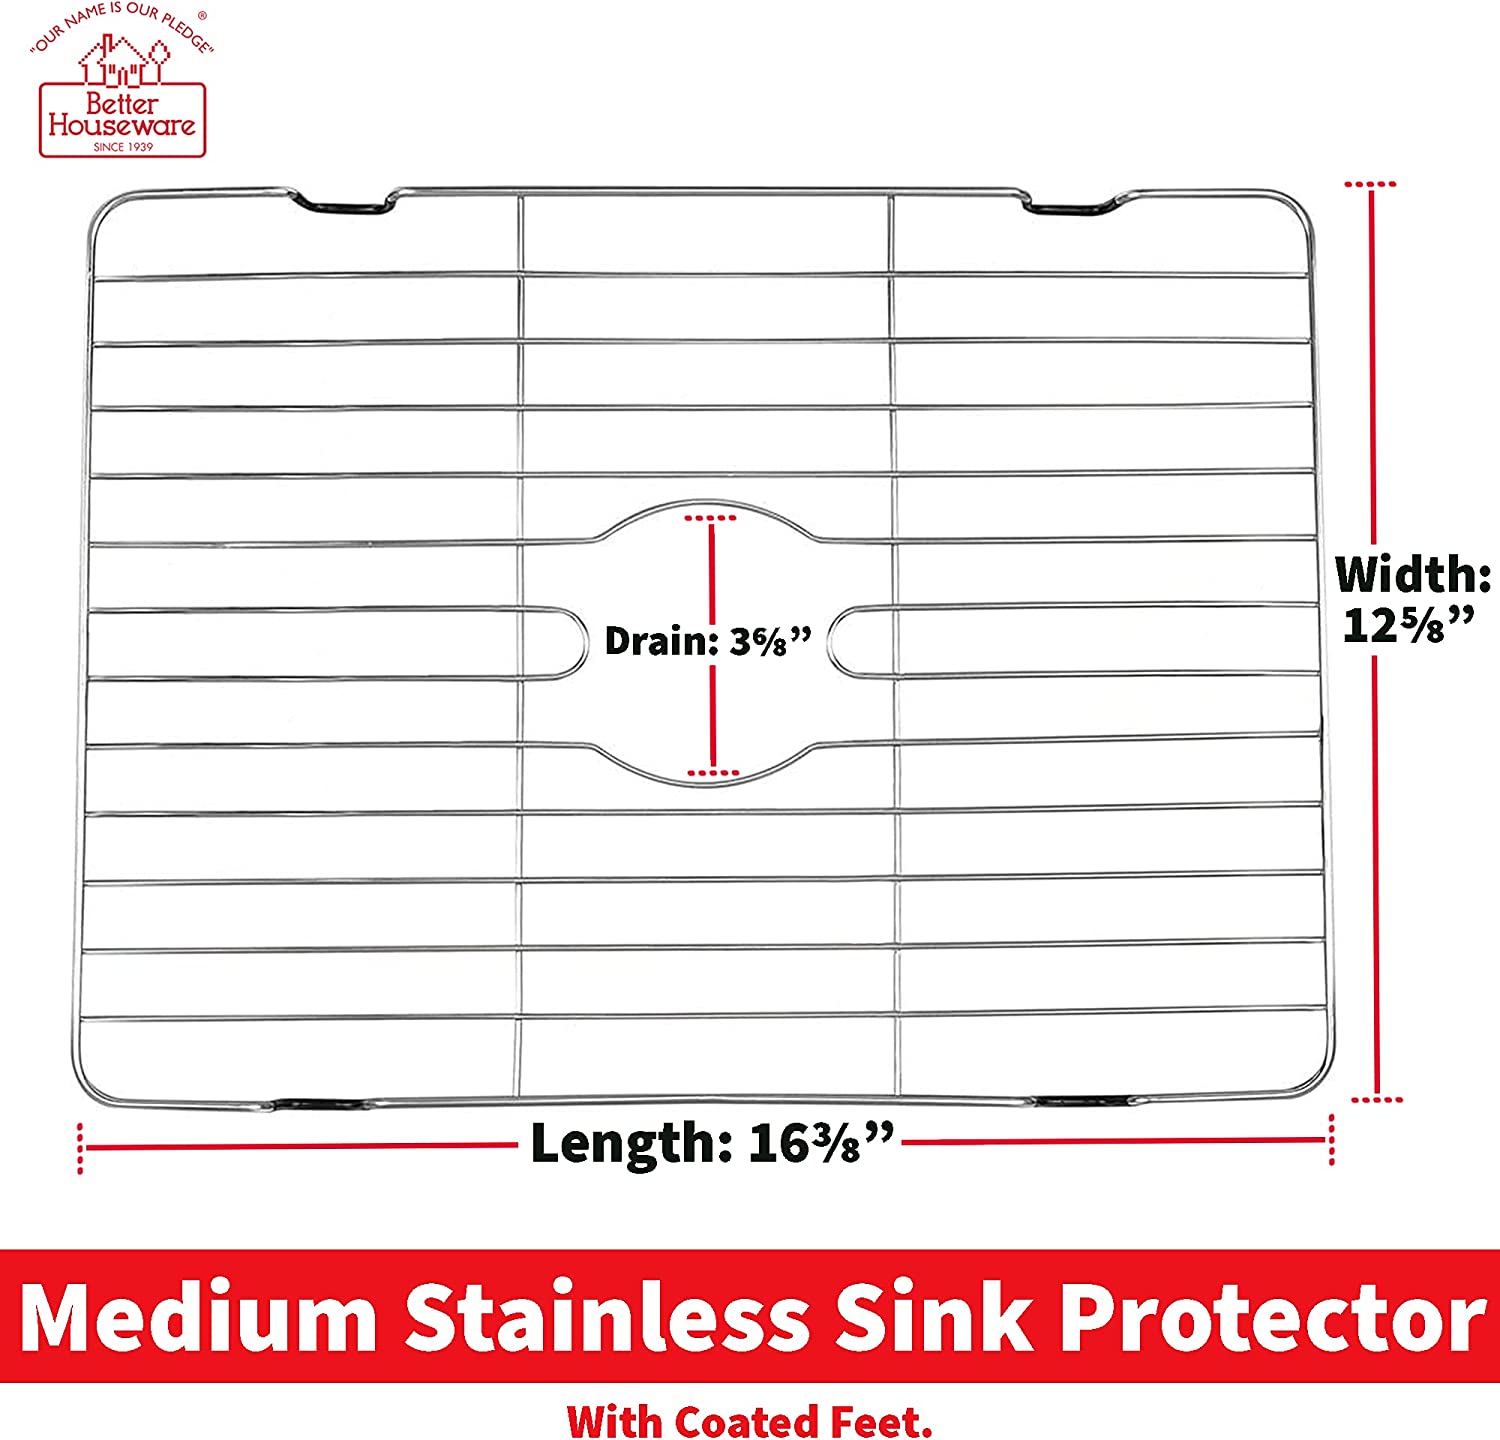 Stainless Steel Sink Protector – Medium